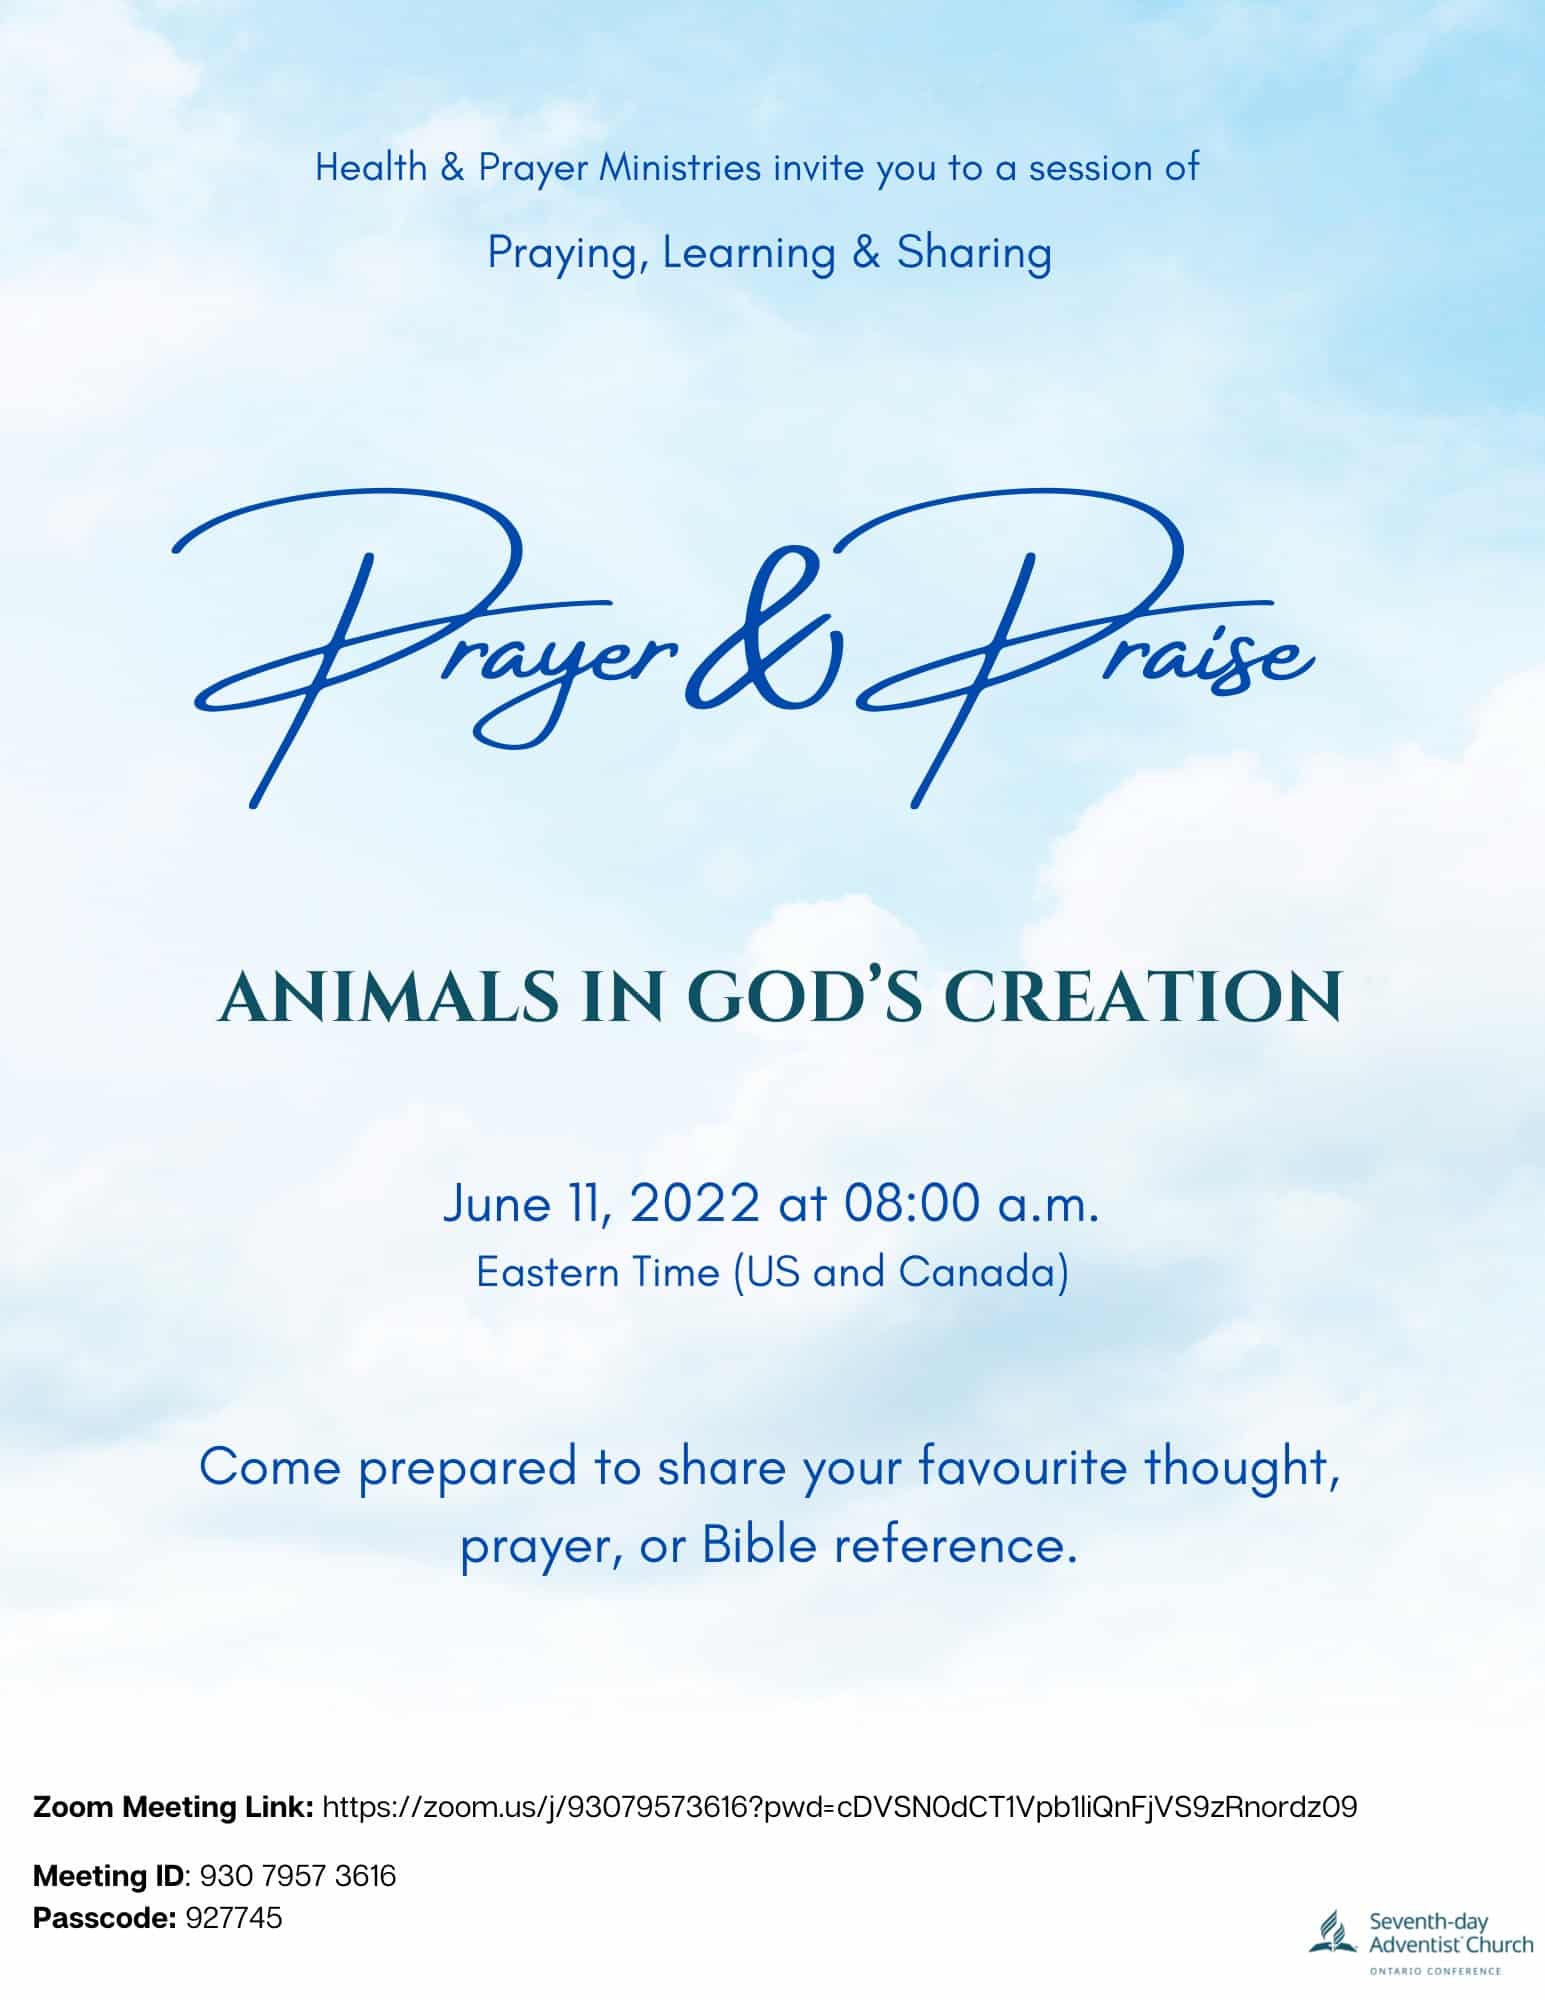 Prayer and Praise Flyer for June 11